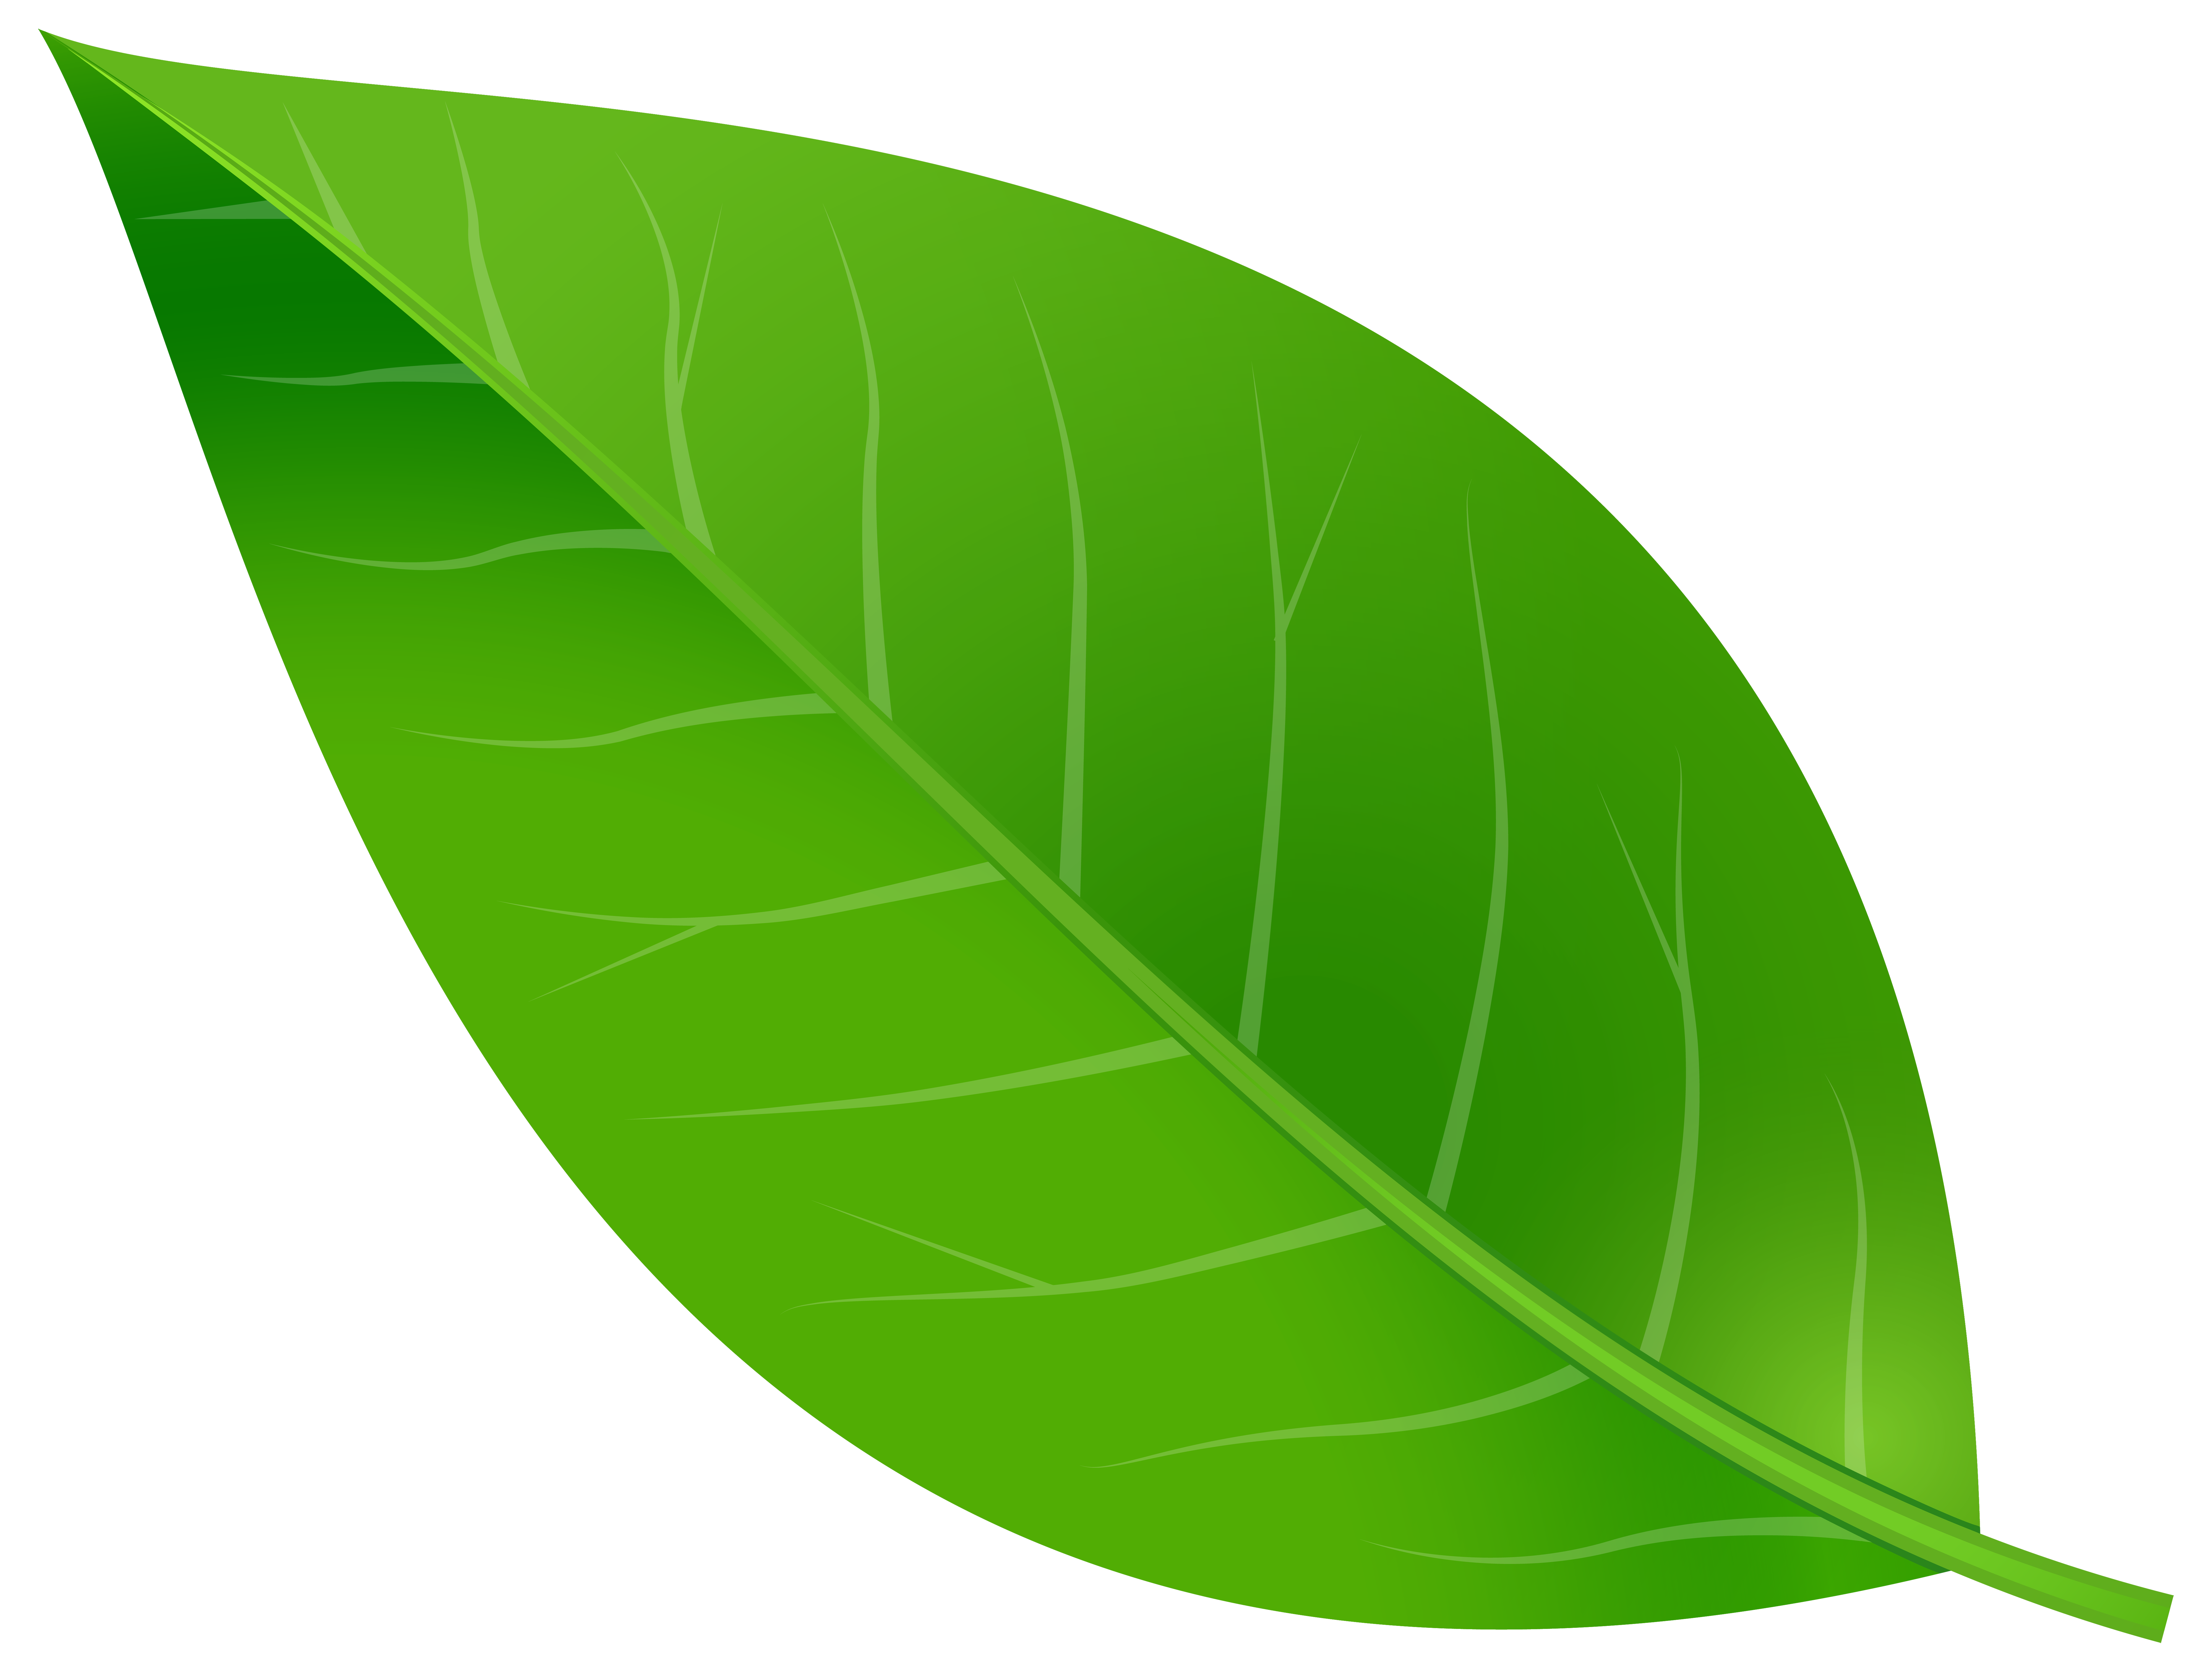 Leaf Clip art - Spring Leaf Transparent PNG Clip Art Image png download